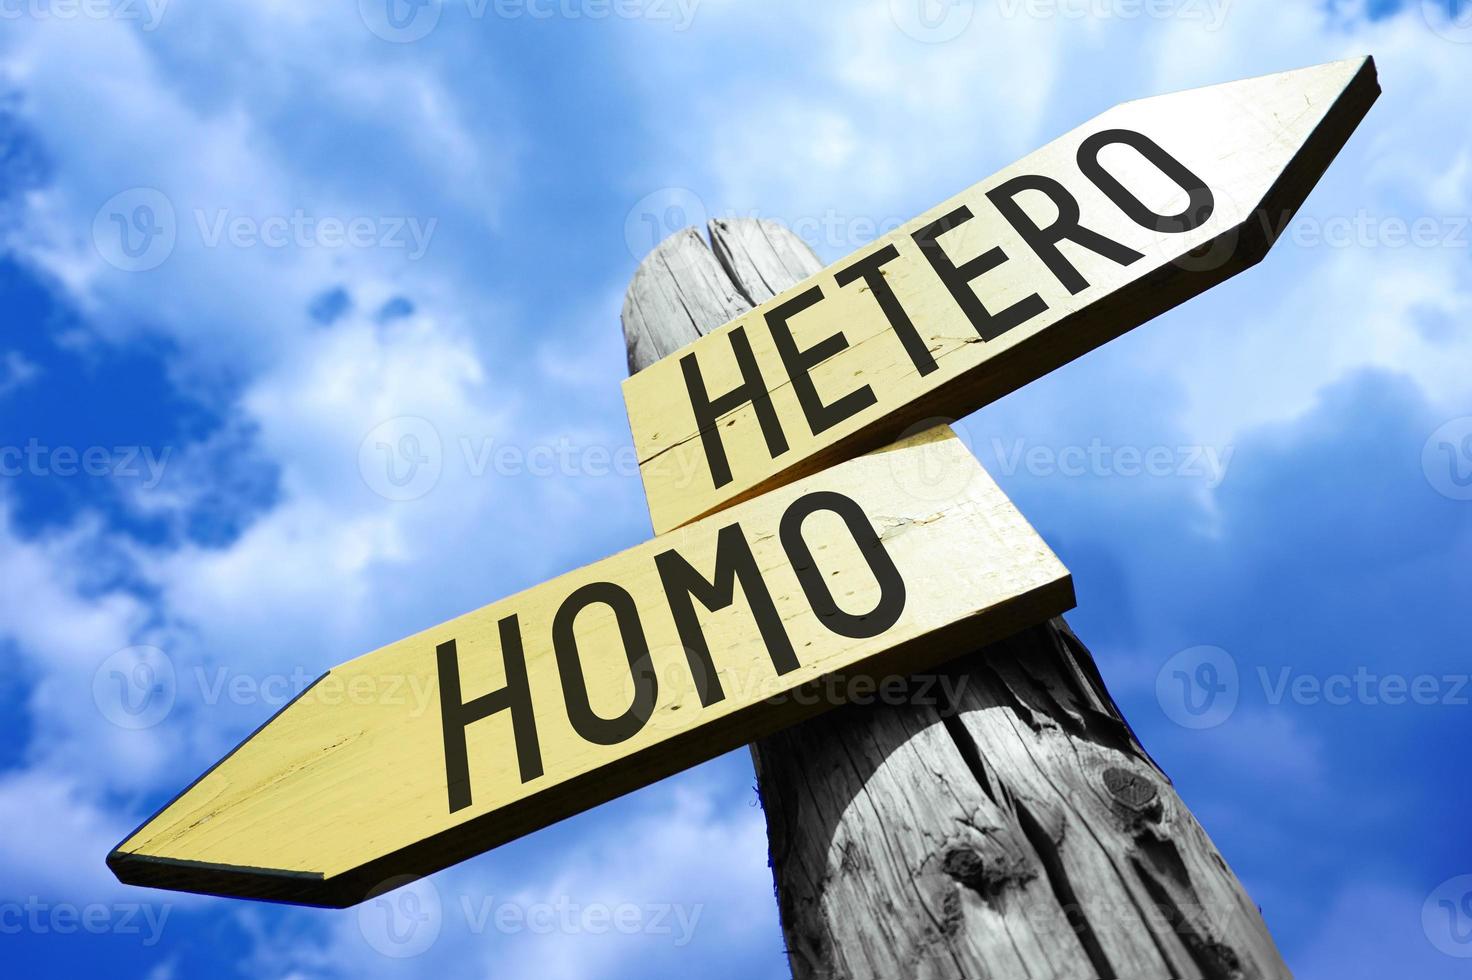 hetero, homo - houten wegwijzer met twee pijlen en lucht in achtergrond foto